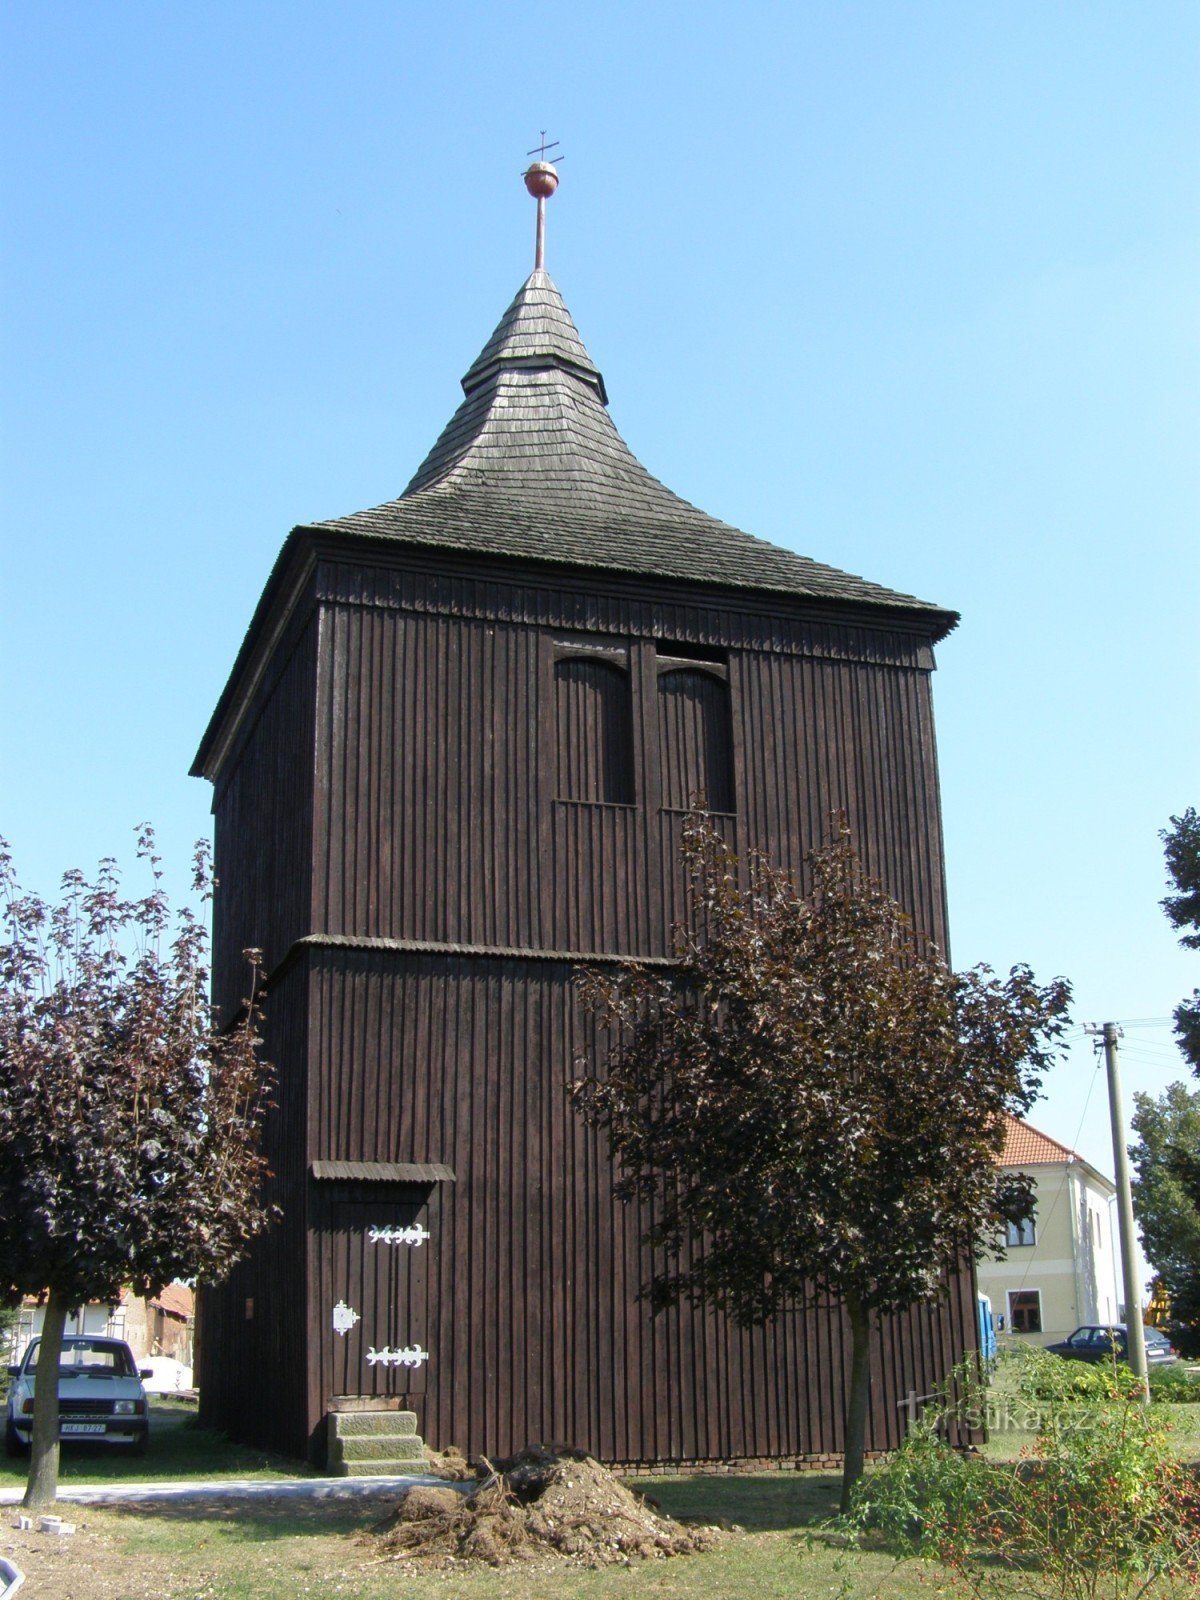 Stará Voda - torre sineira de madeira